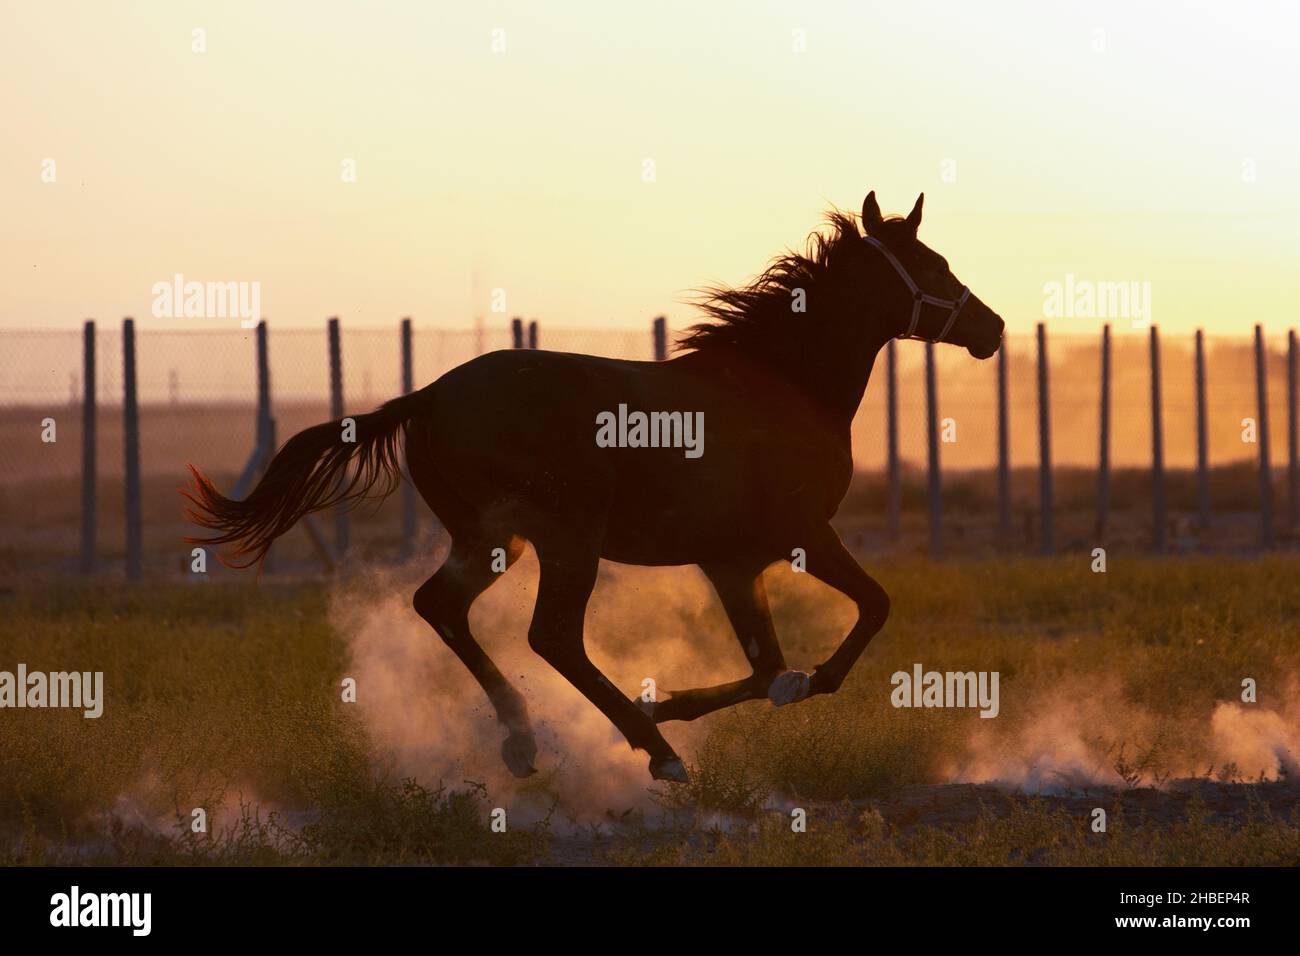 Atlar cok asil hayvanlar. Çekici fotoğraflar veriyorlar. Stock Photo